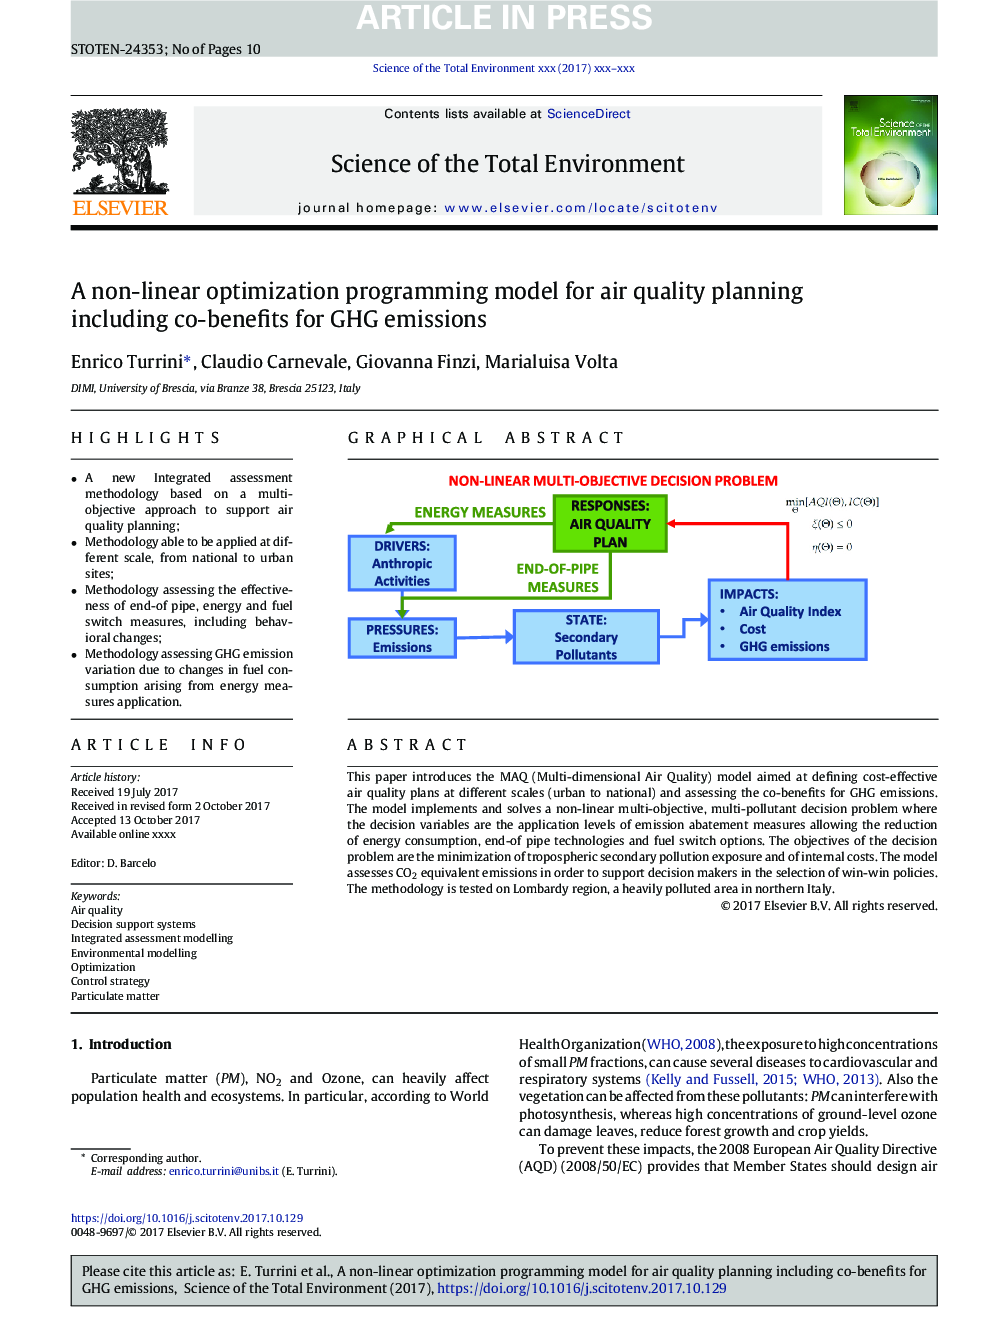 یک مدل برنامه نویسی بهینه سازی غیر خطی برای برنامه ریزی کیفیت هوا از جمله مزایای استفاده از انتشار گازهای گلخانه ای 